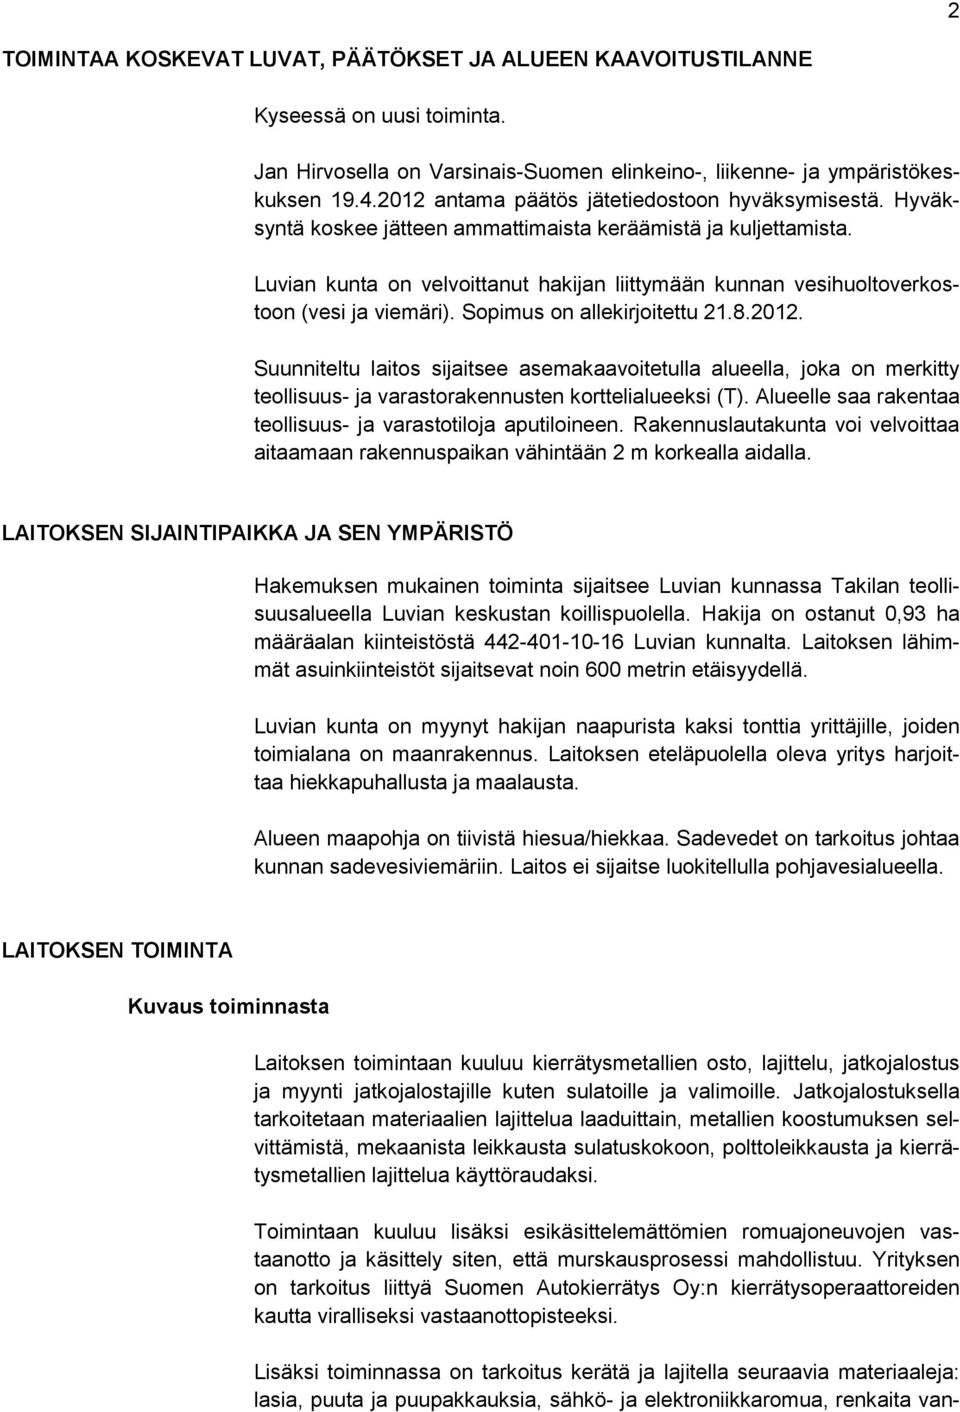 Luvian kunta on velvoittanut hakijan liittymään kunnan vesihuoltoverkostoon (vesi ja viemäri). Sopimus on allekirjoitettu 21.8.2012.